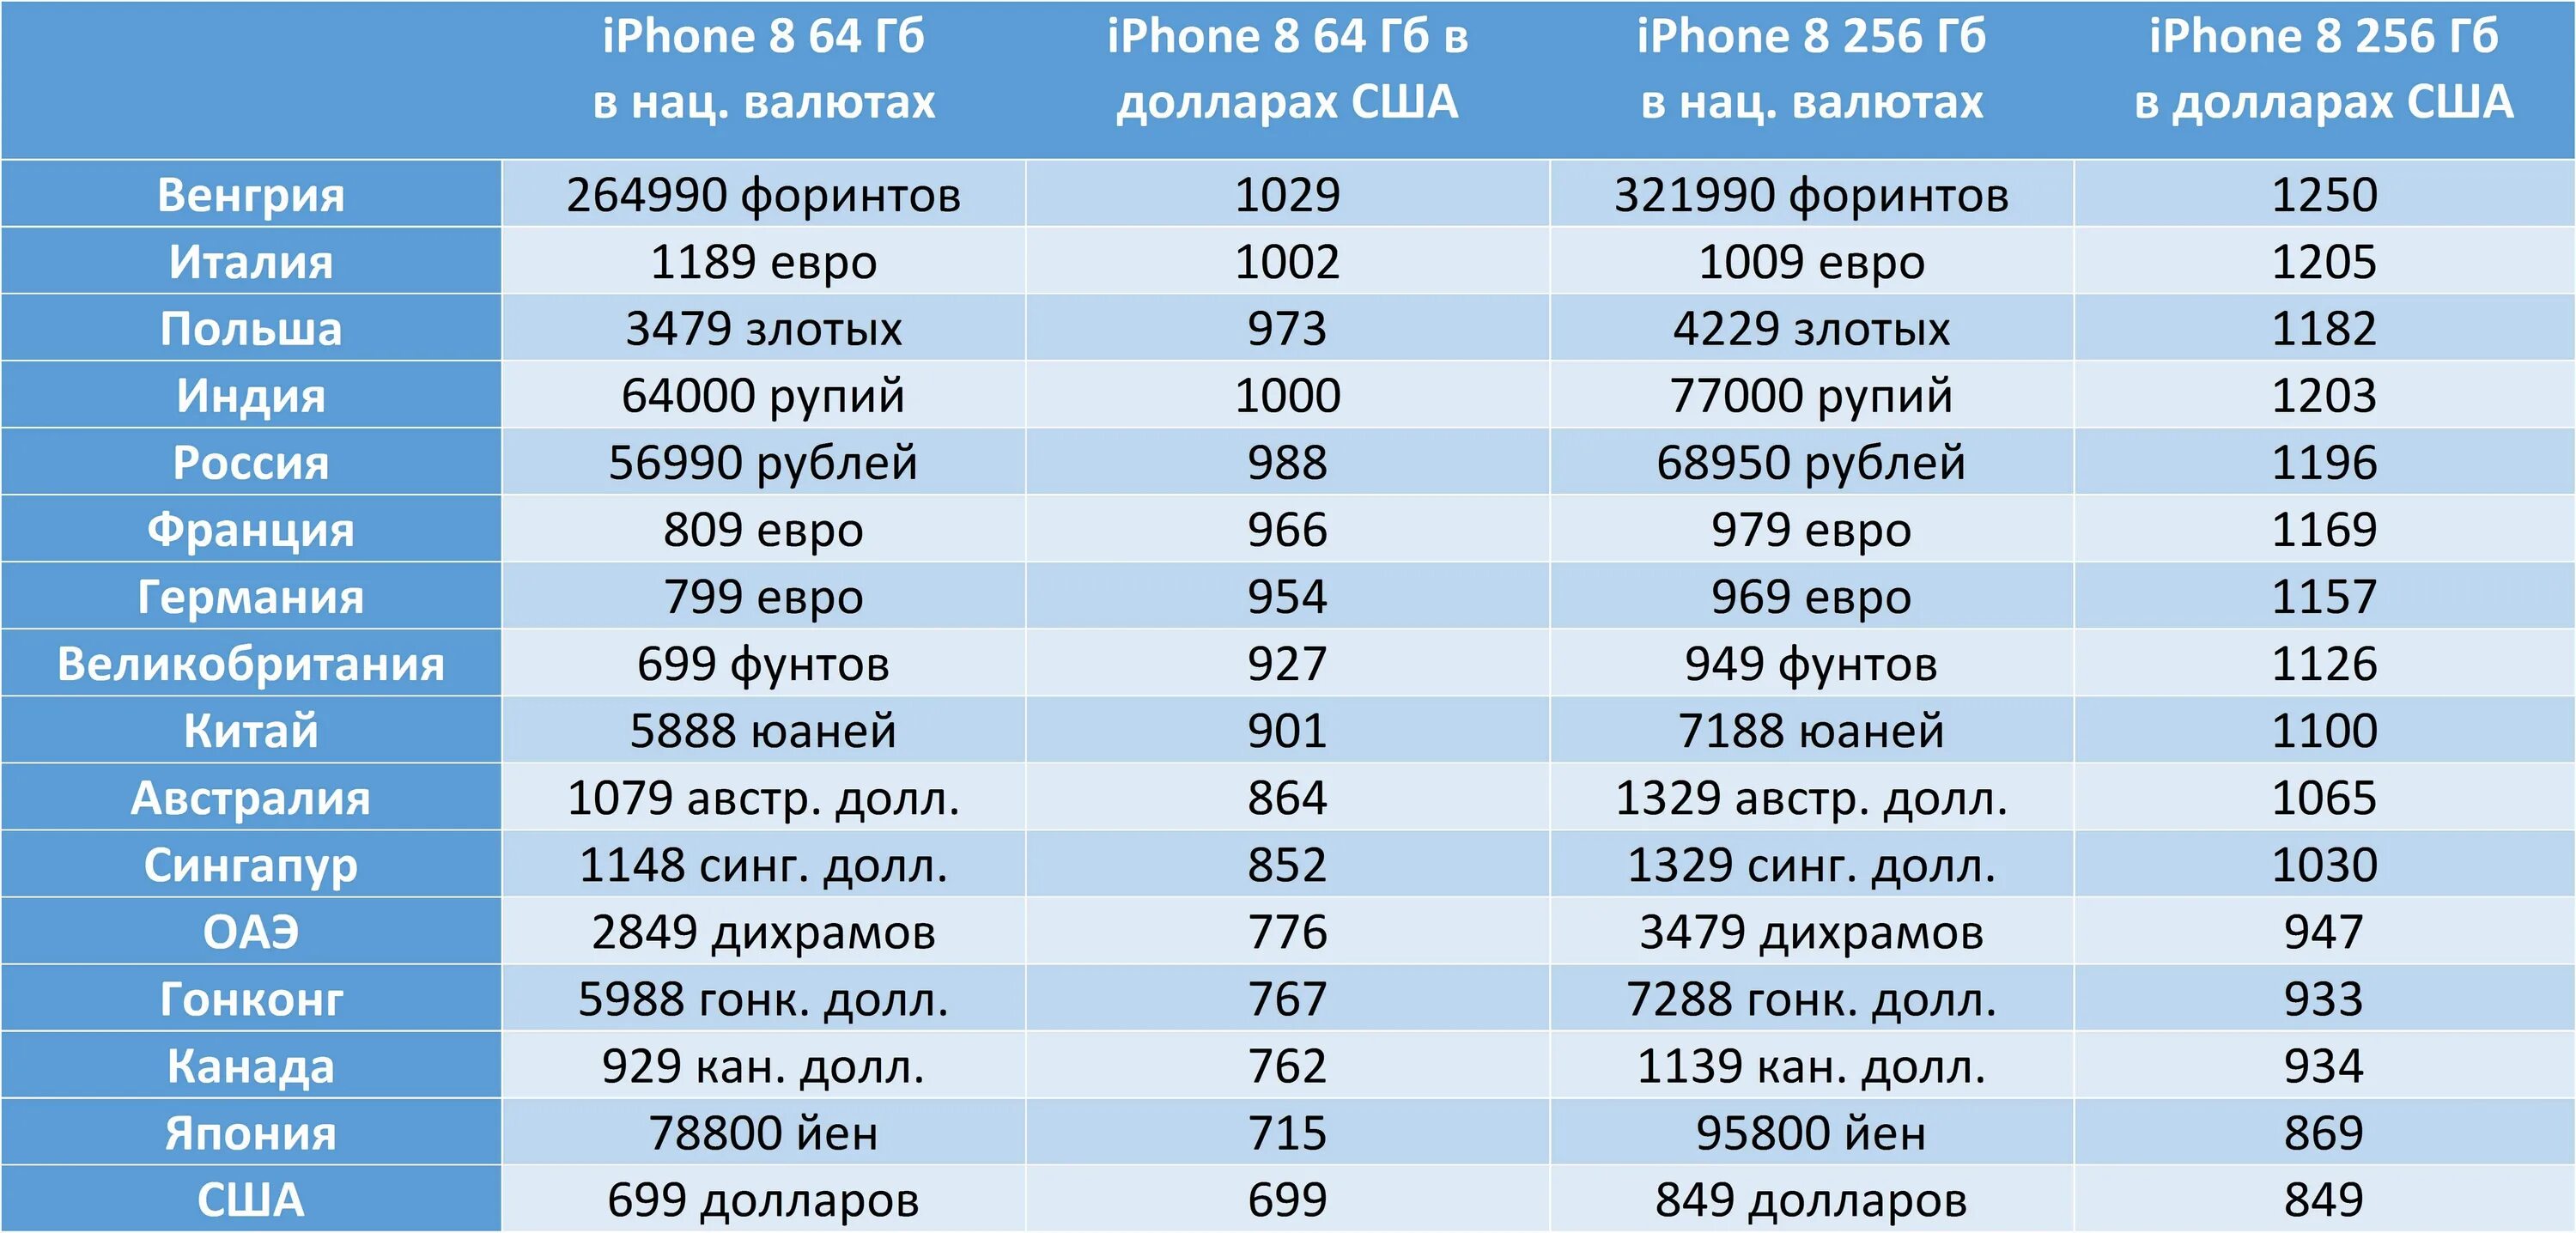 Количество проданных айфонов по странам. Количество айфонов в Америке. Самые дешевые айфоны по странам. В какой стране продаются самые дешевые айфоны.